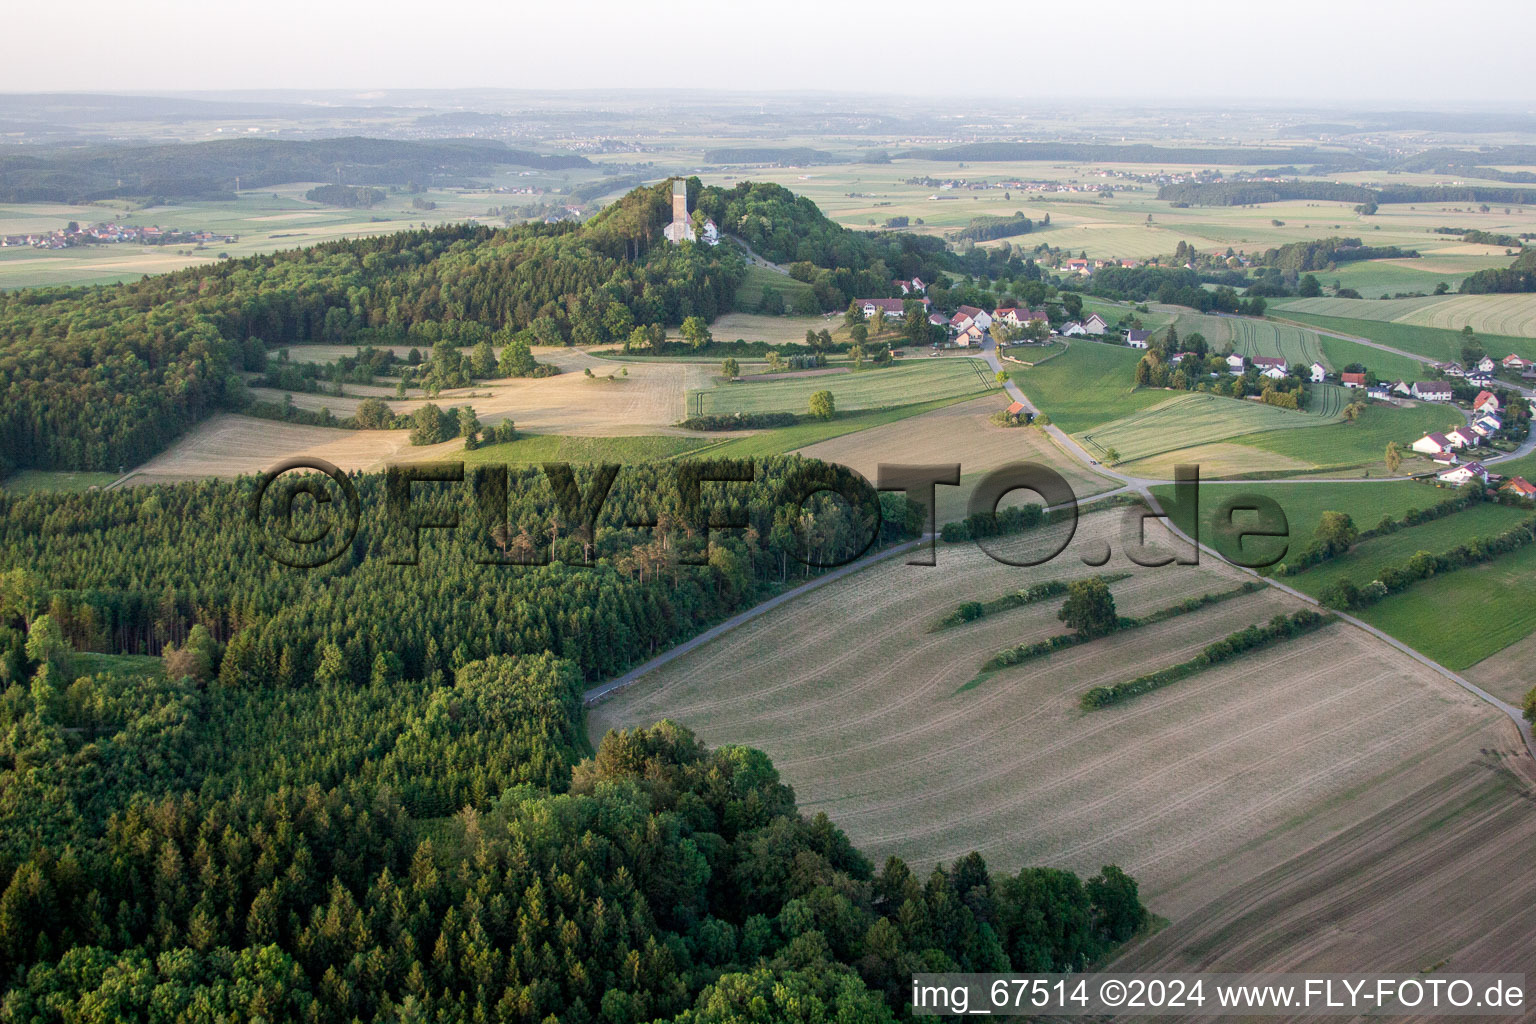 Photographie aérienne de Sommet de Bussen avec église de pèlerinage dans le quartier d'Offingen à Uttenweiler dans le département Bade-Wurtemberg, Allemagne